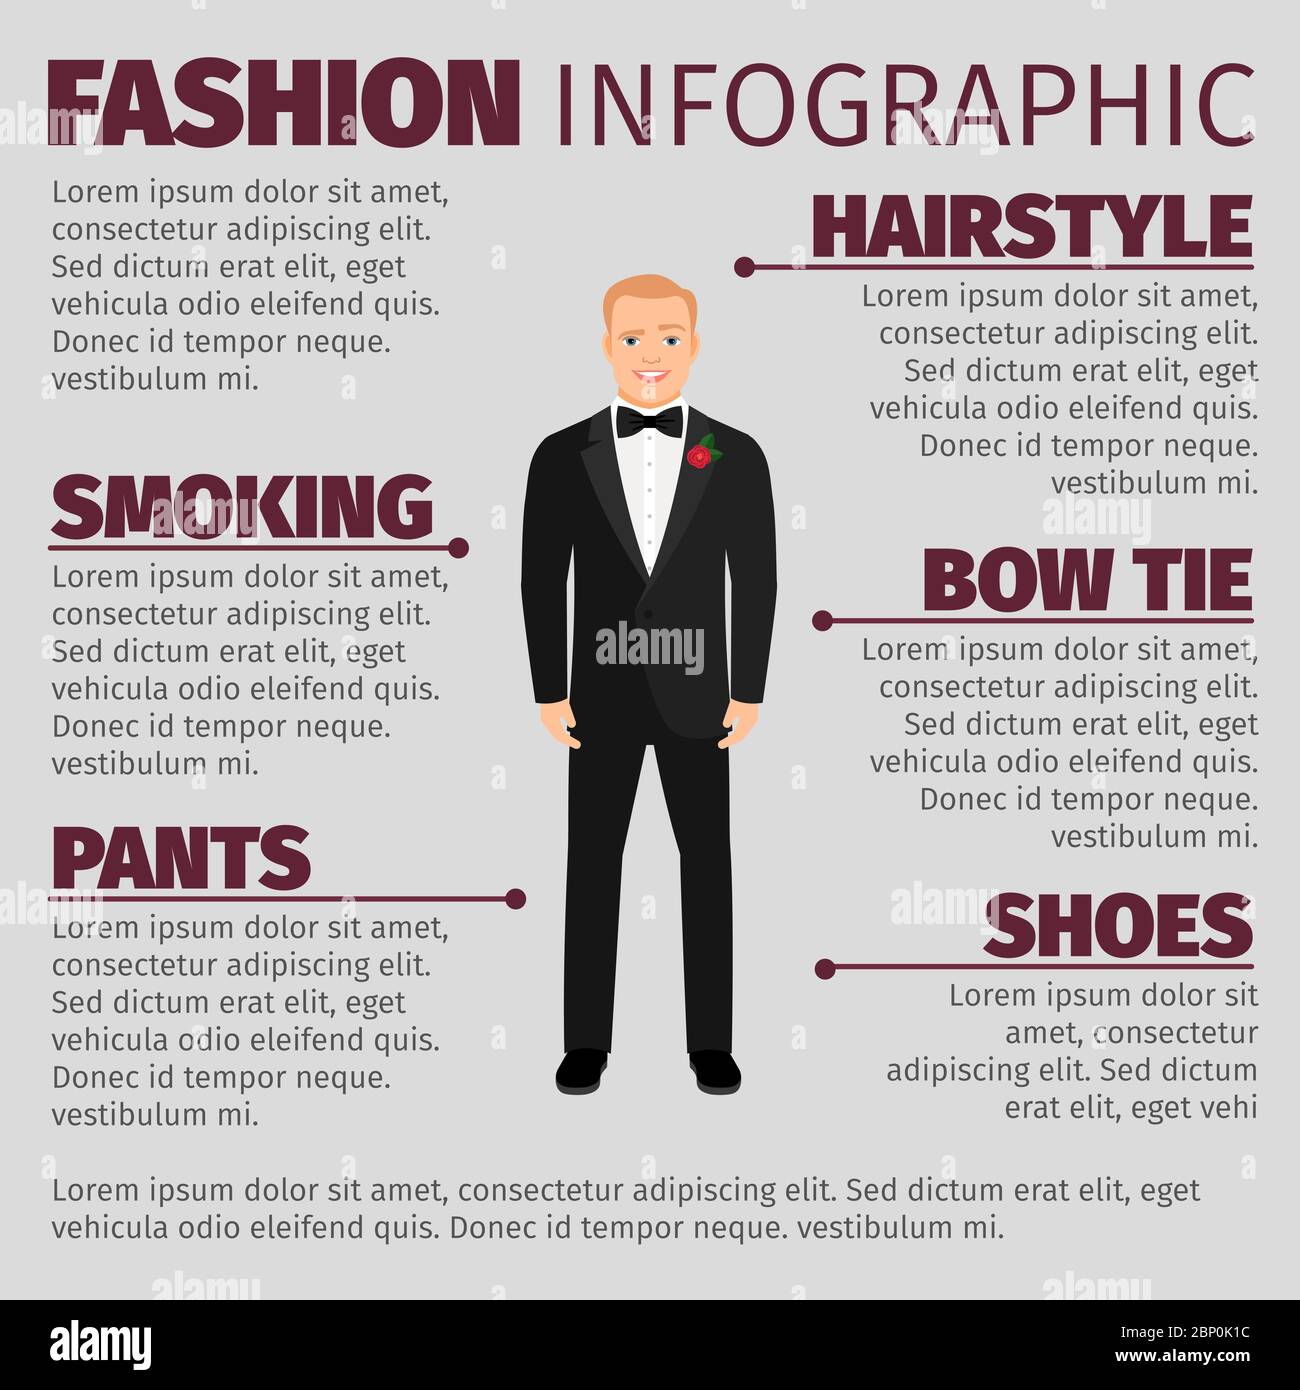 Mode Infografik mit lächelndem Mann in einem Hochzeitsanzug. Vektorgrafik Stock Vektor